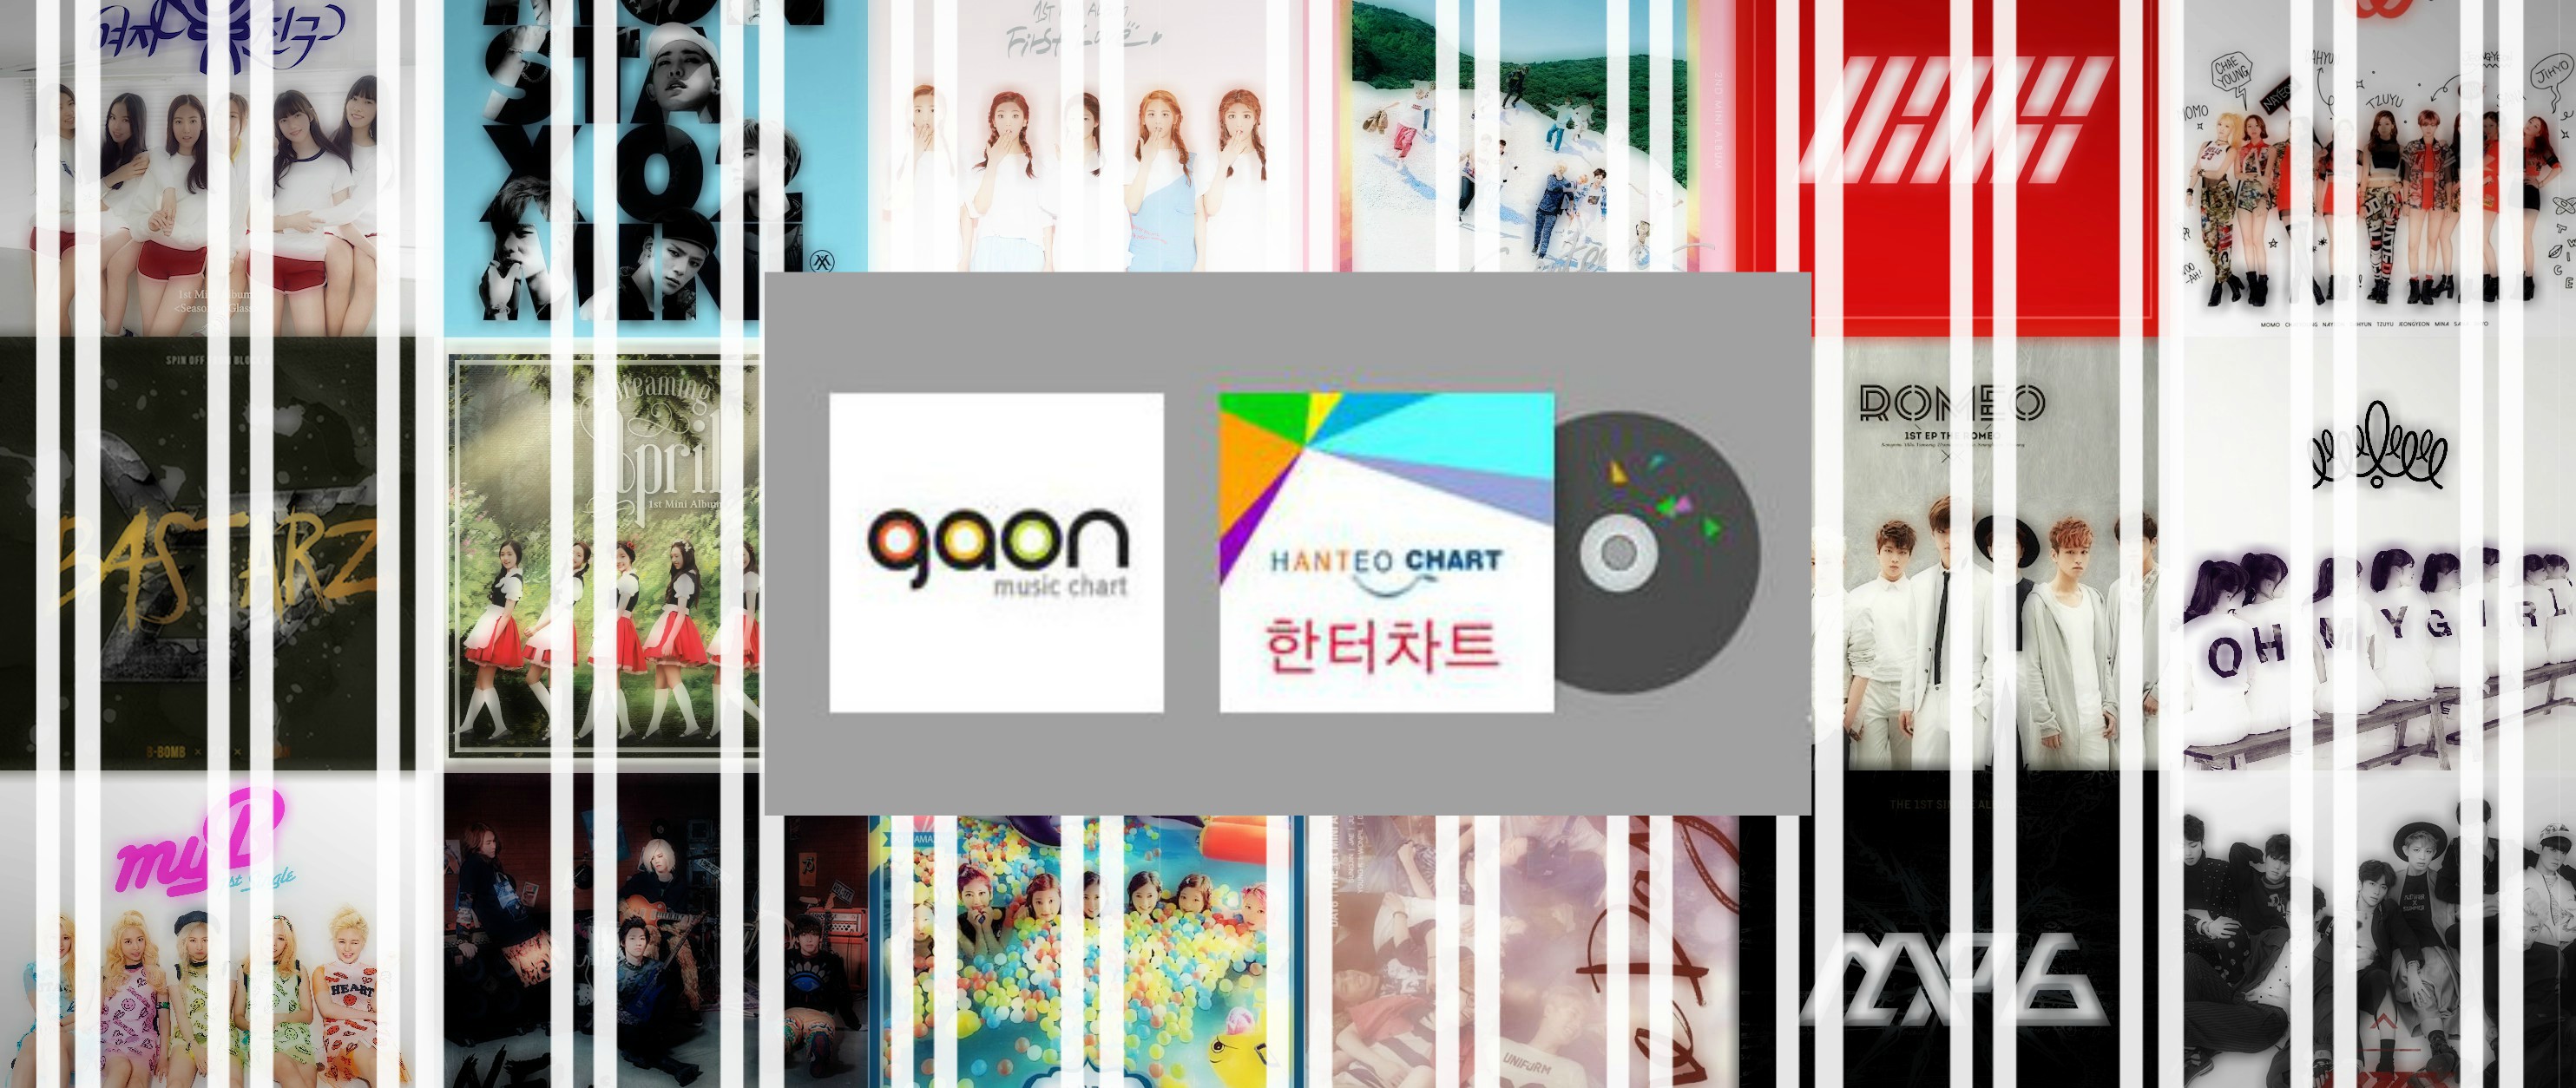 Kpop Market Hanteo Gaon Chart Family Store